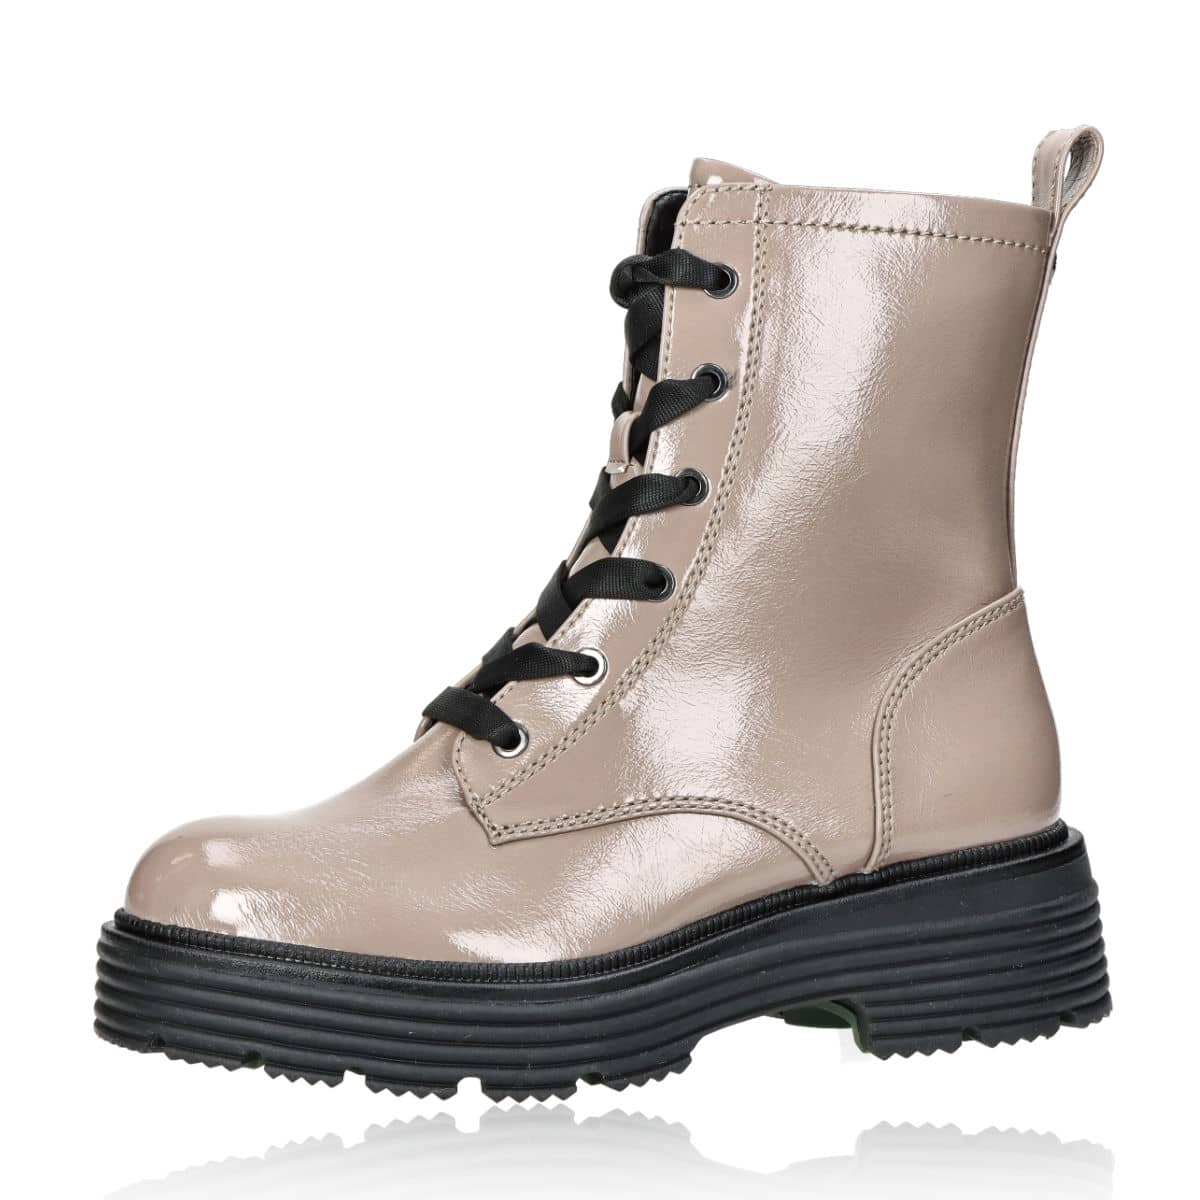 Tamaris women's zipped boots - beige/brown | Robel.shoes